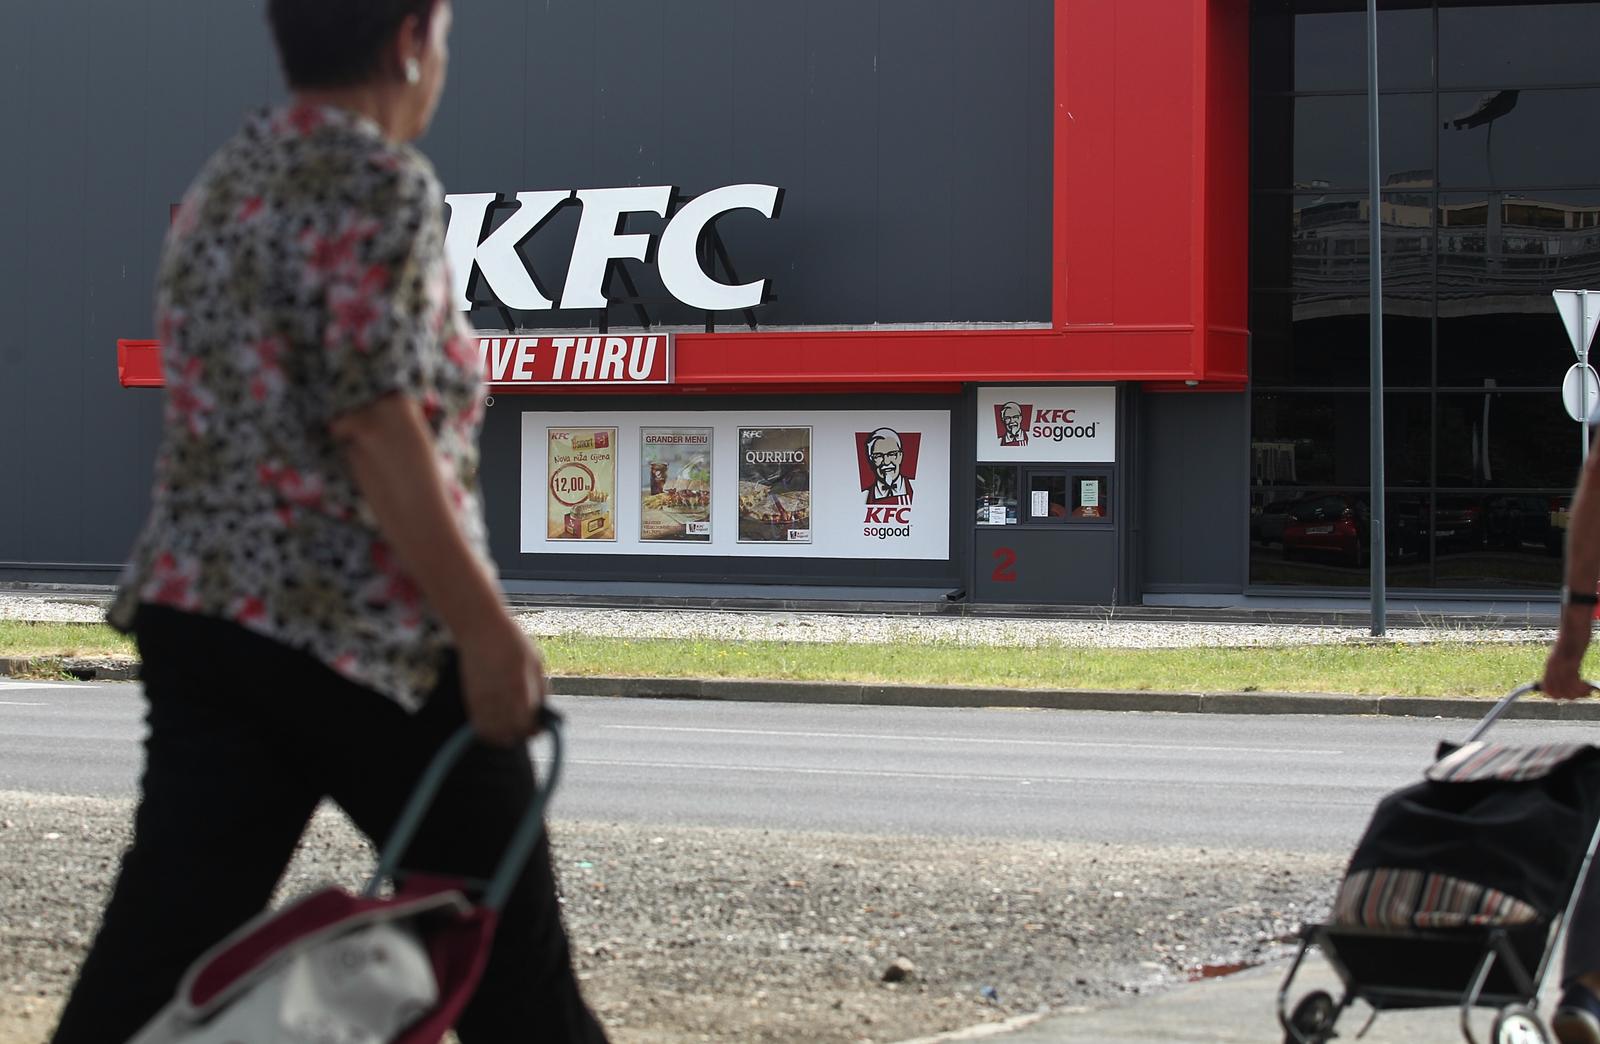 16.06.2015 ., Zagreb - Restoran brze prehrane KFC. Prvi KFC restoran u Hrvatskoj otvoren je krajem 2011. godine pod okriljem kompanije AmRest Adria d.o.o. Photo: Zeljko Lukunic/PIXSELL"n